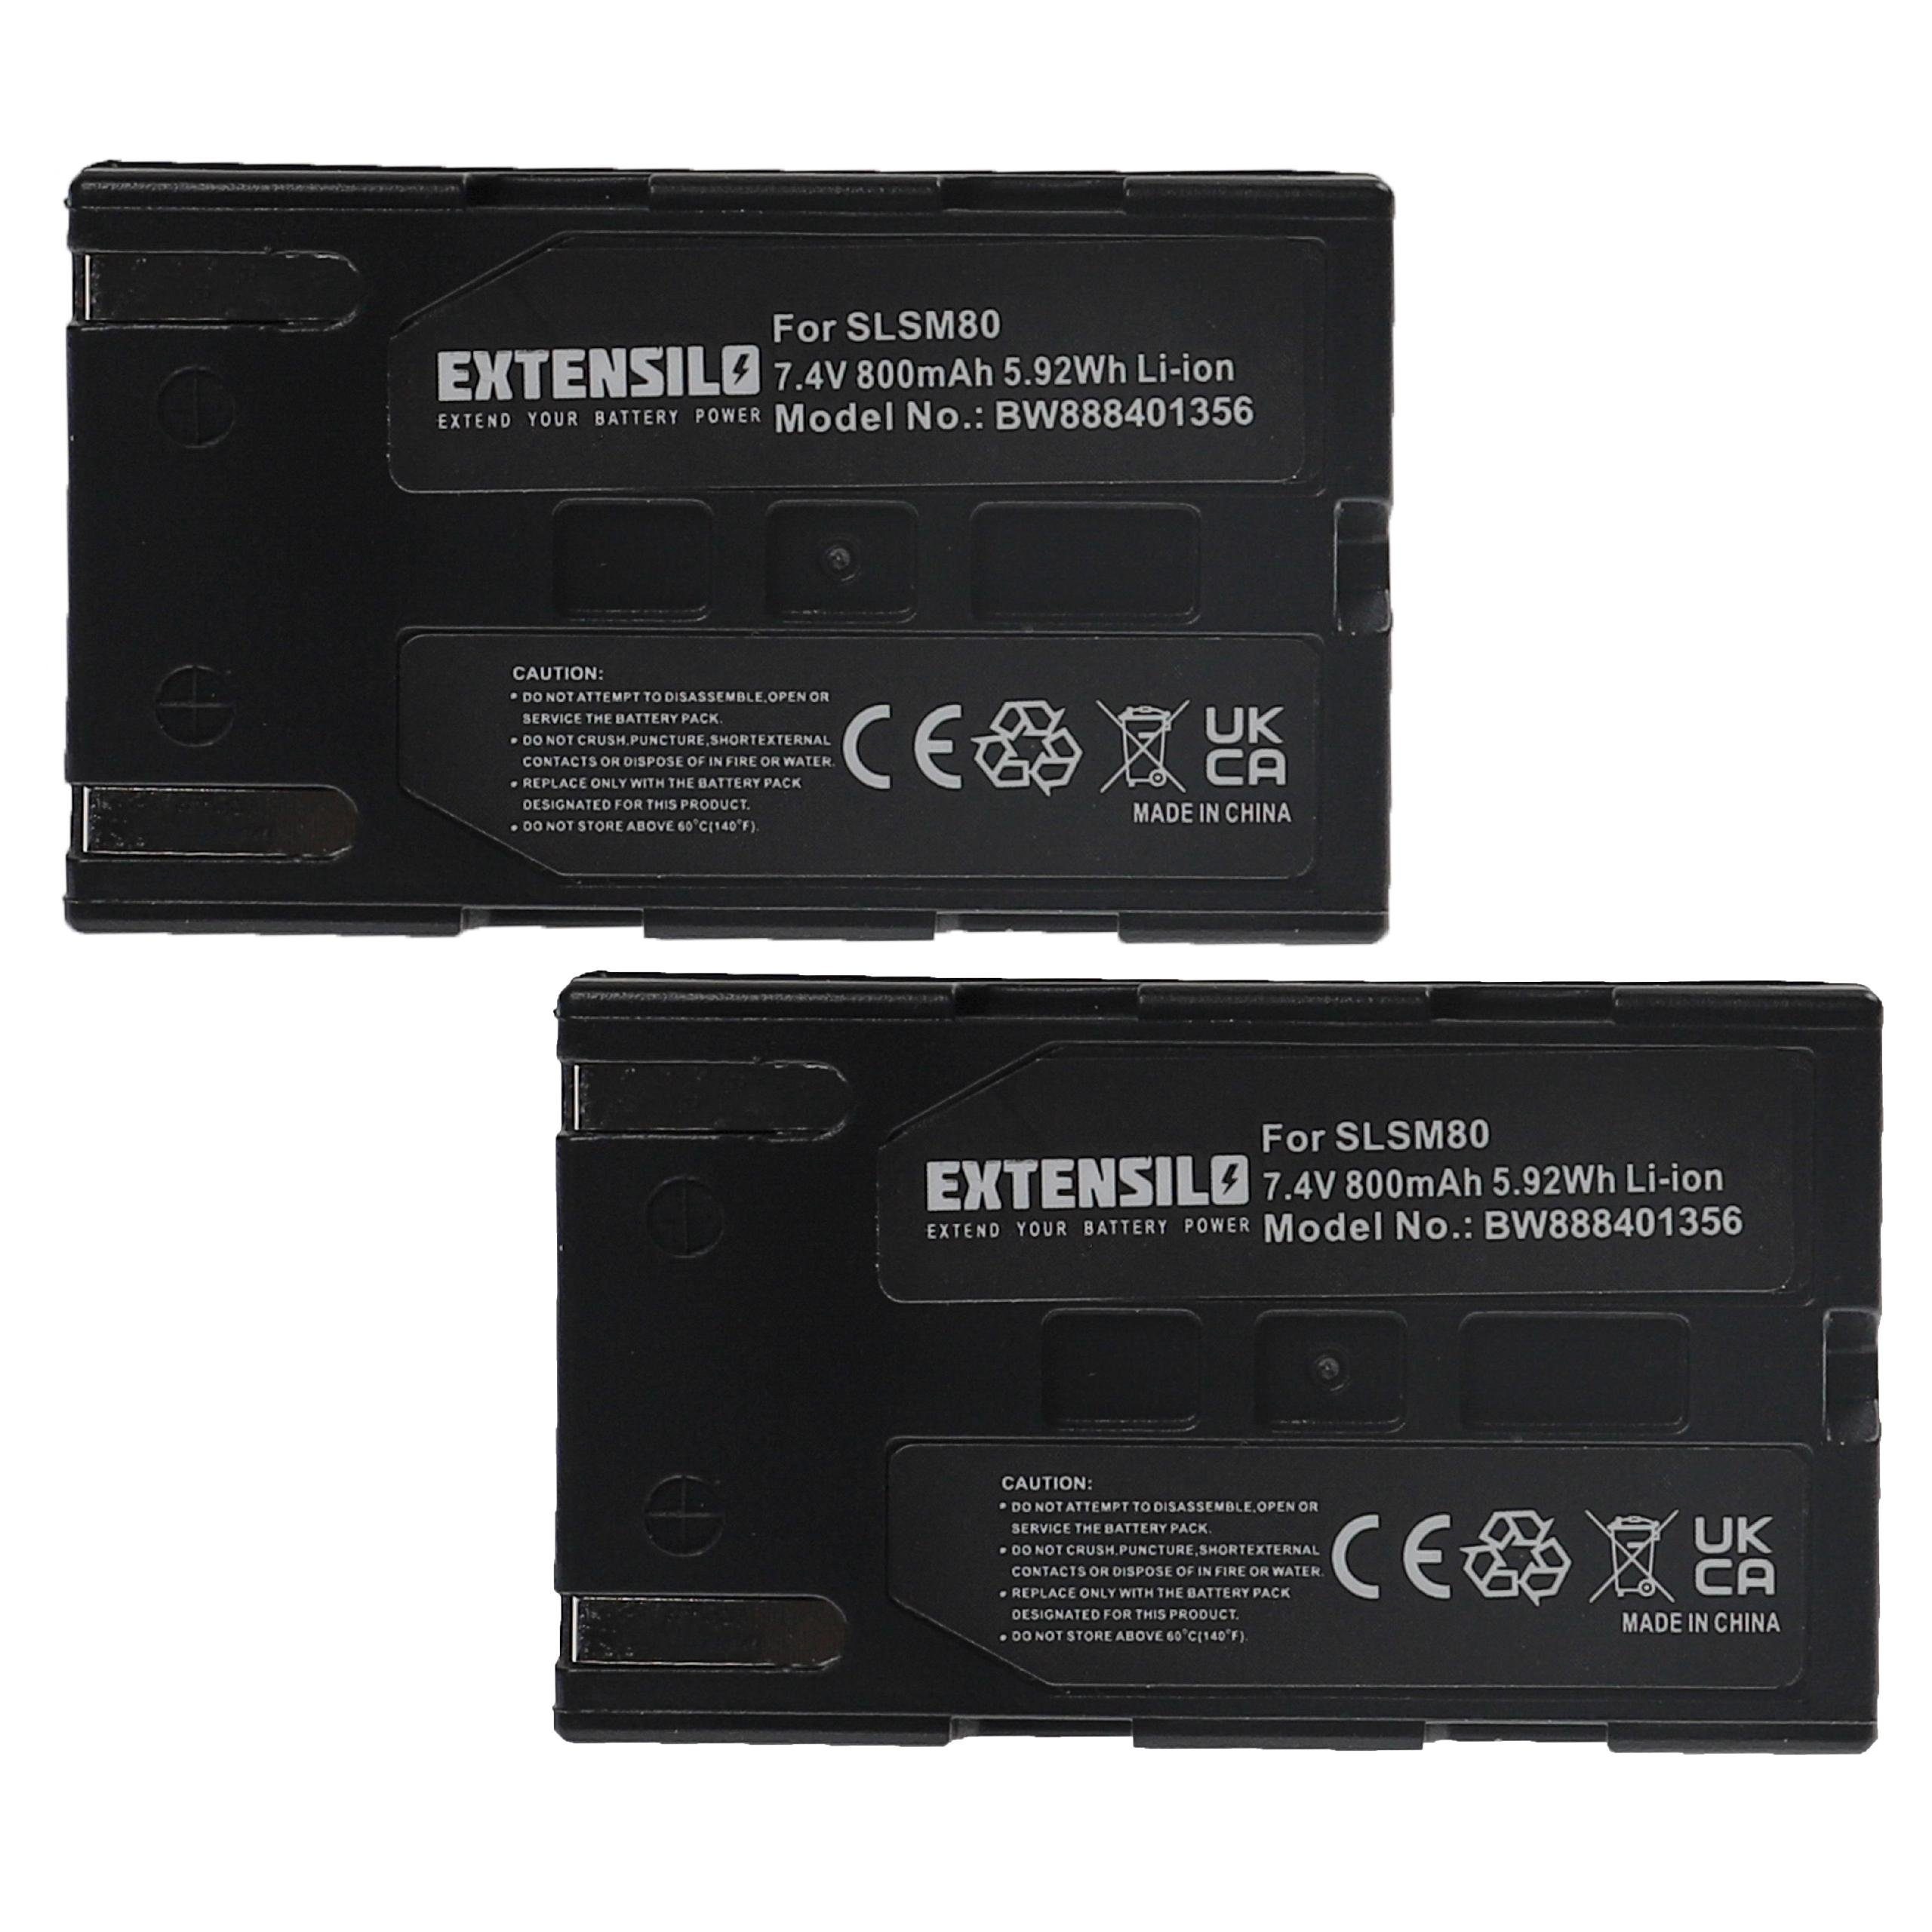 passend SC-D354, Extensilo Samsung SC-D353, für Kamera-Akku SC-D355, SC-D352, SC-D351, 800 mAh